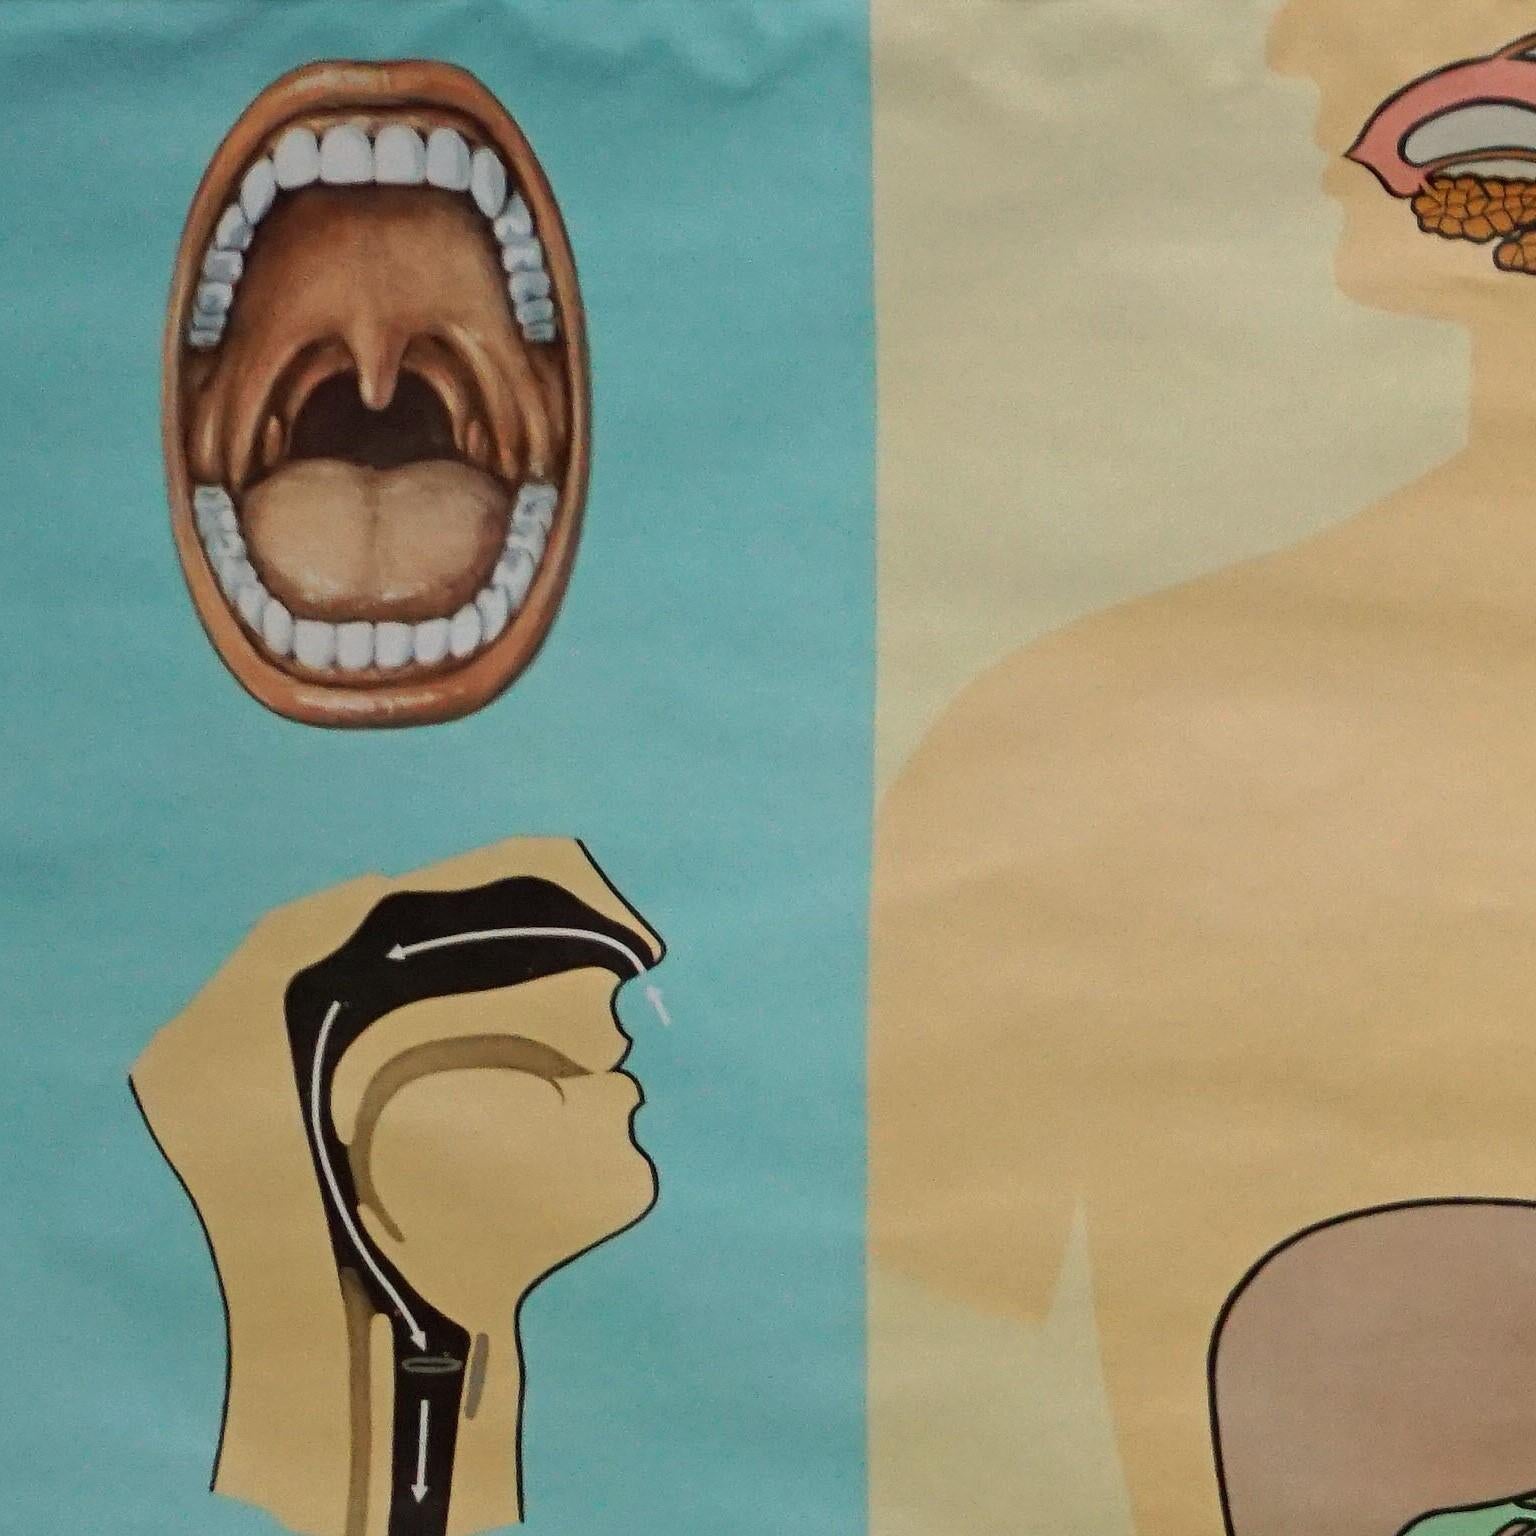 Une affiche médicale vintage montrant le tube digestif des aliments - partie 2 de la série human body par Hagemann Duesseldorf. Impression colorée sur papier renforcé de toile.
Mesures :
Largeur 165 cm (64.96 pouces)
Hauteur 112,50 cm (44.29